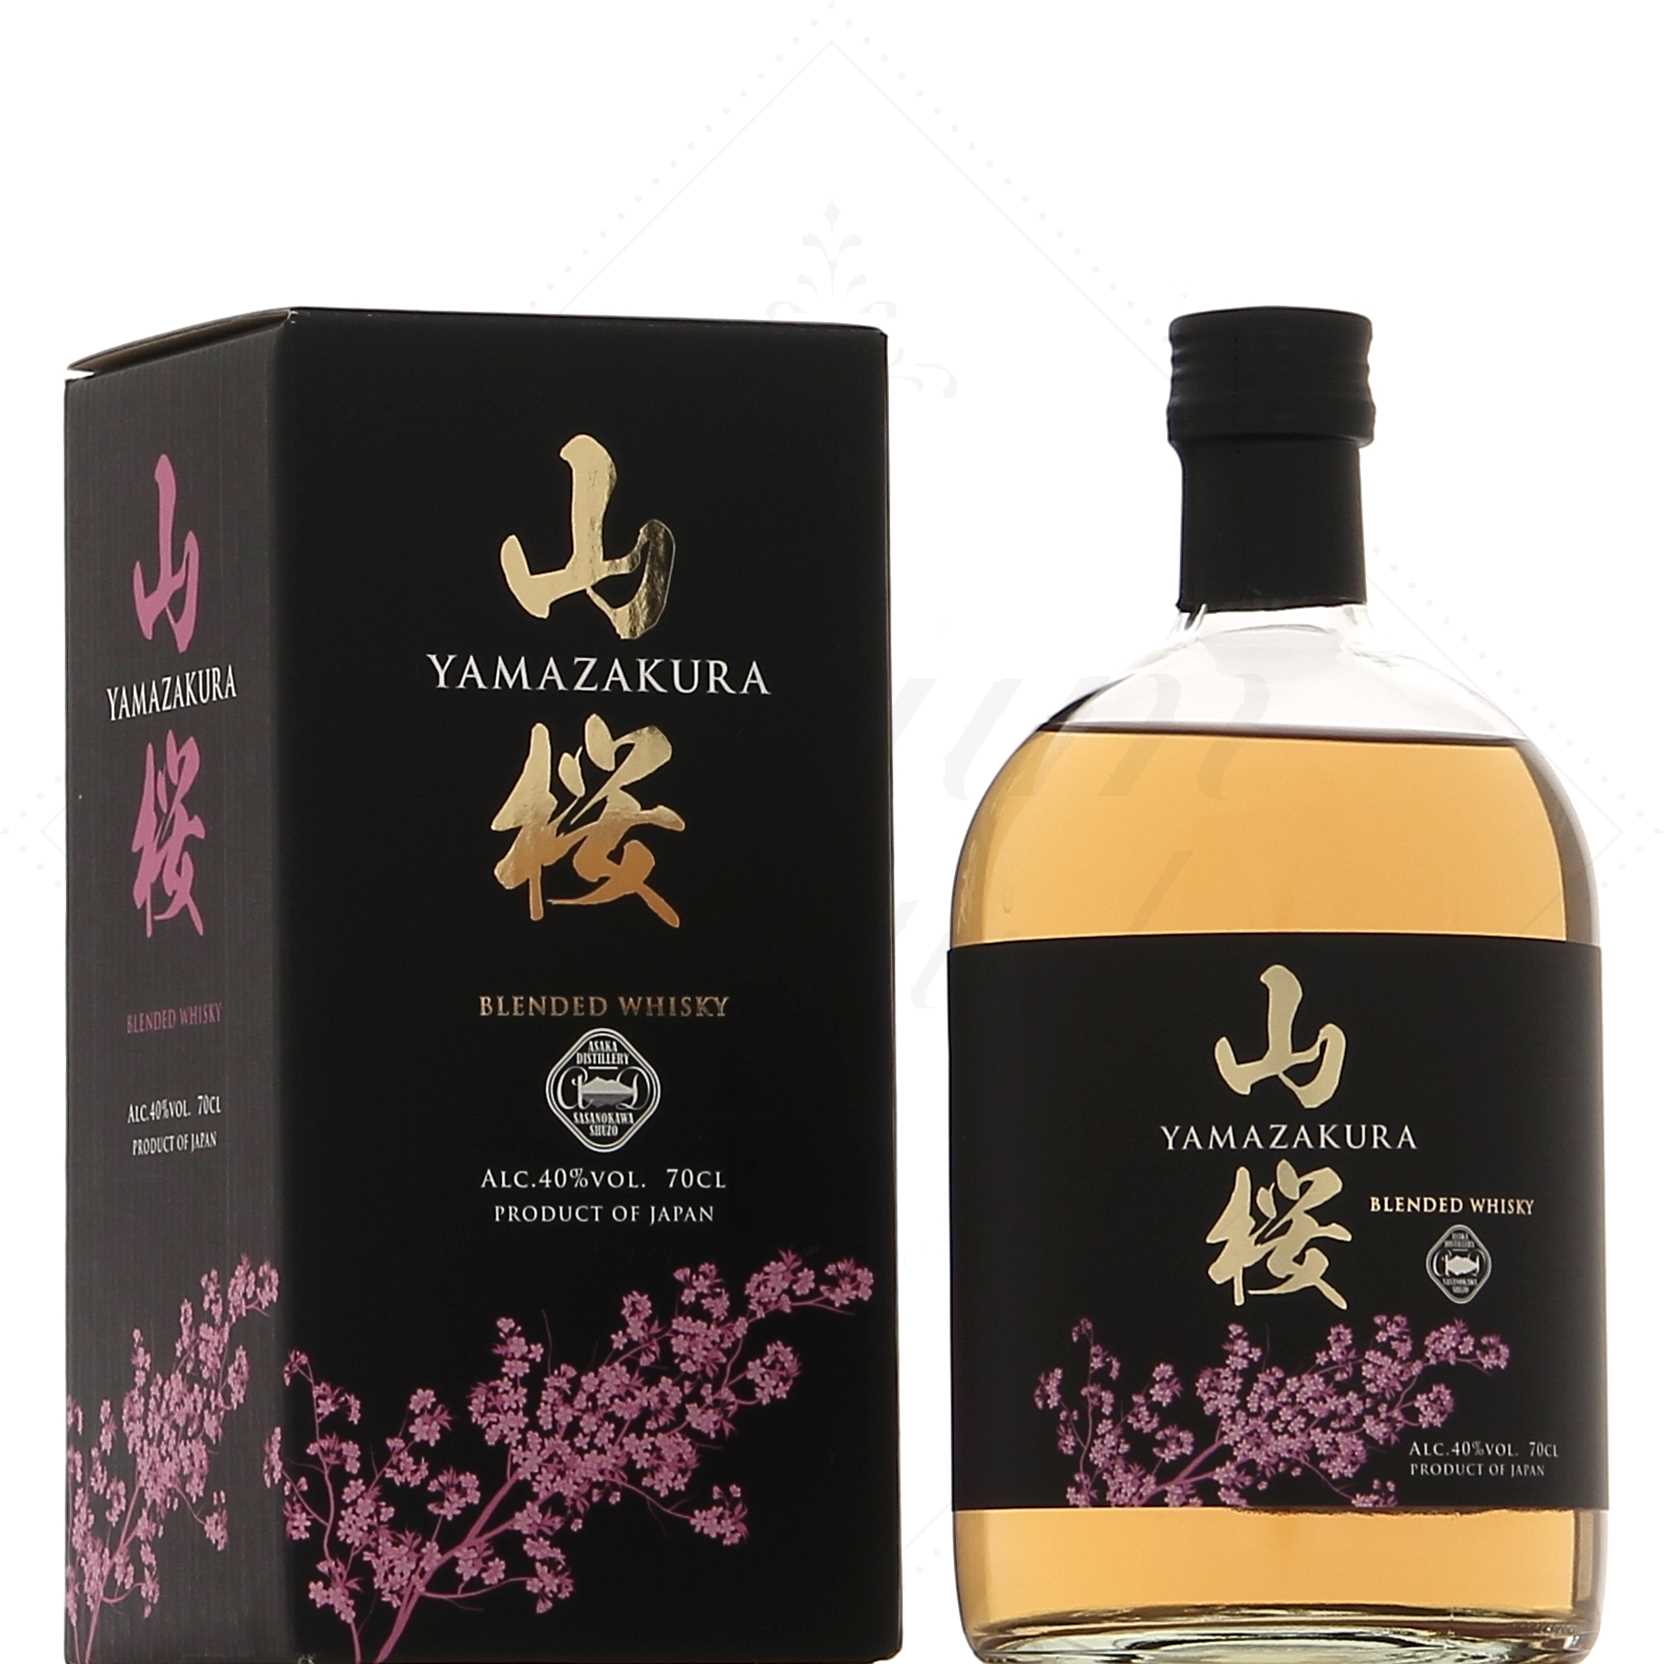 Découvrir le Whisky Japonais : Coffret dégustation et conseils